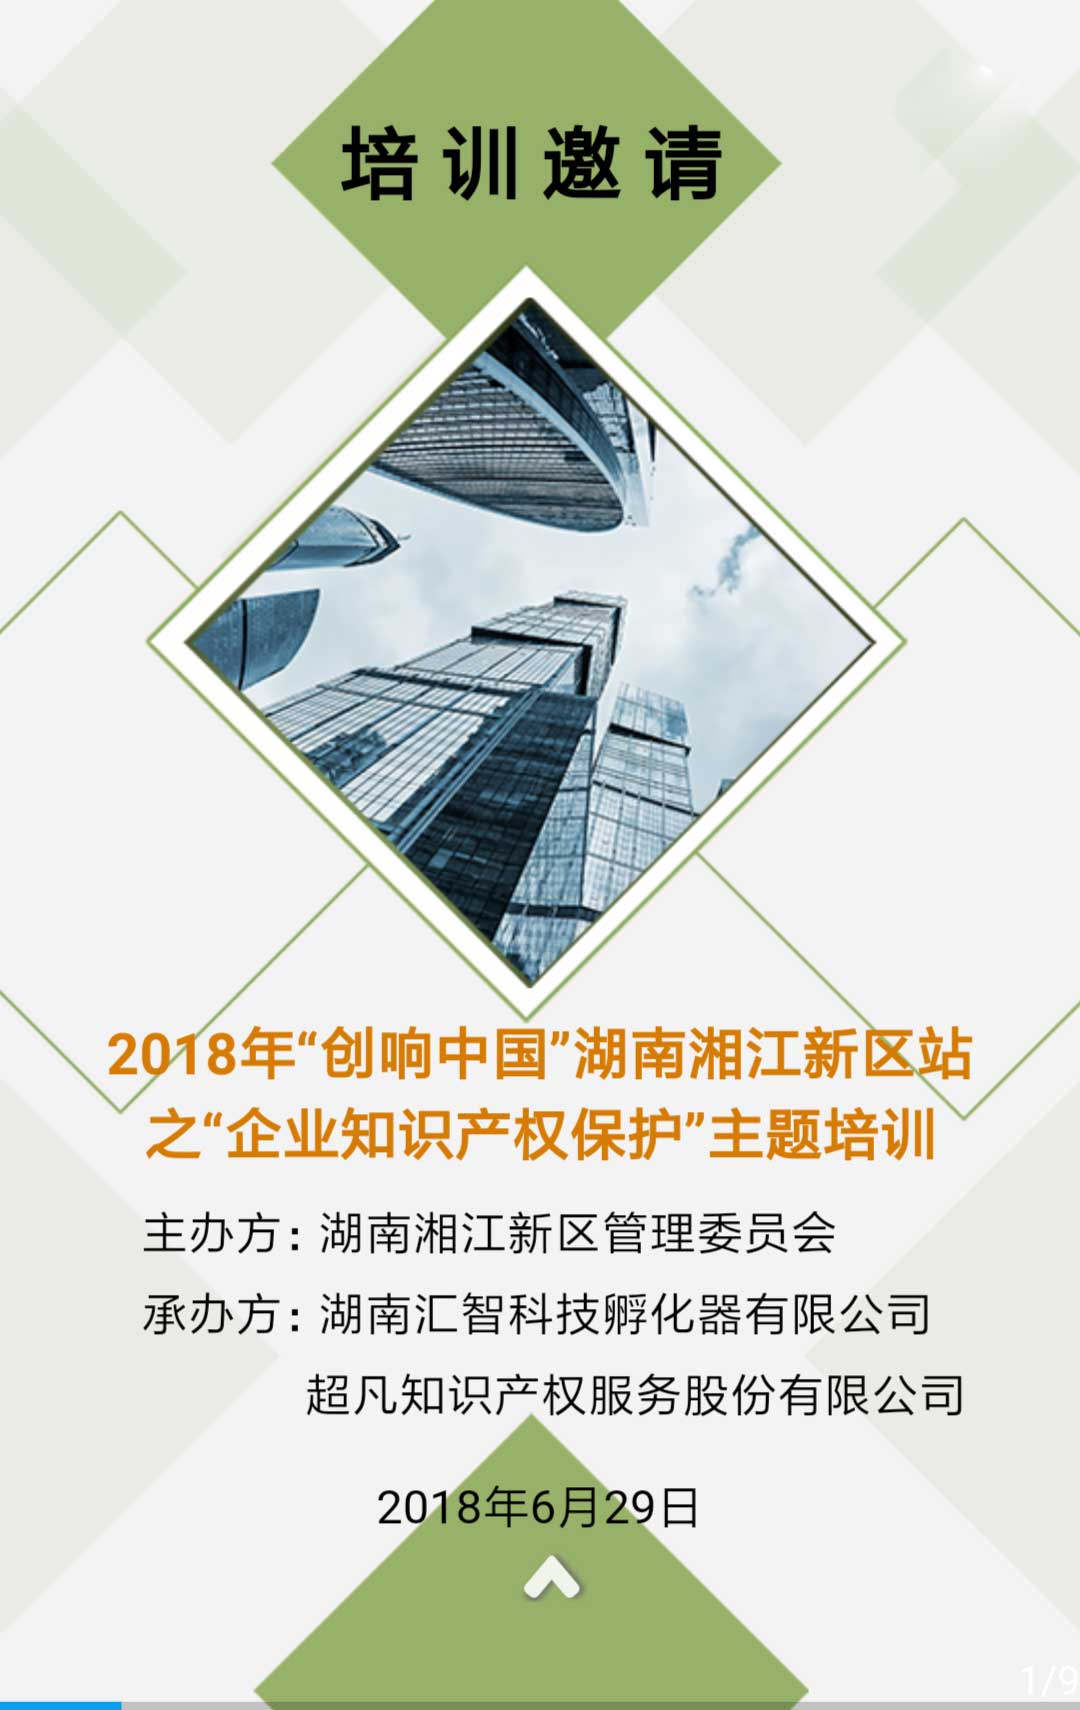 2018年“创响中国”湖南湘江新区站知识产权主题培训